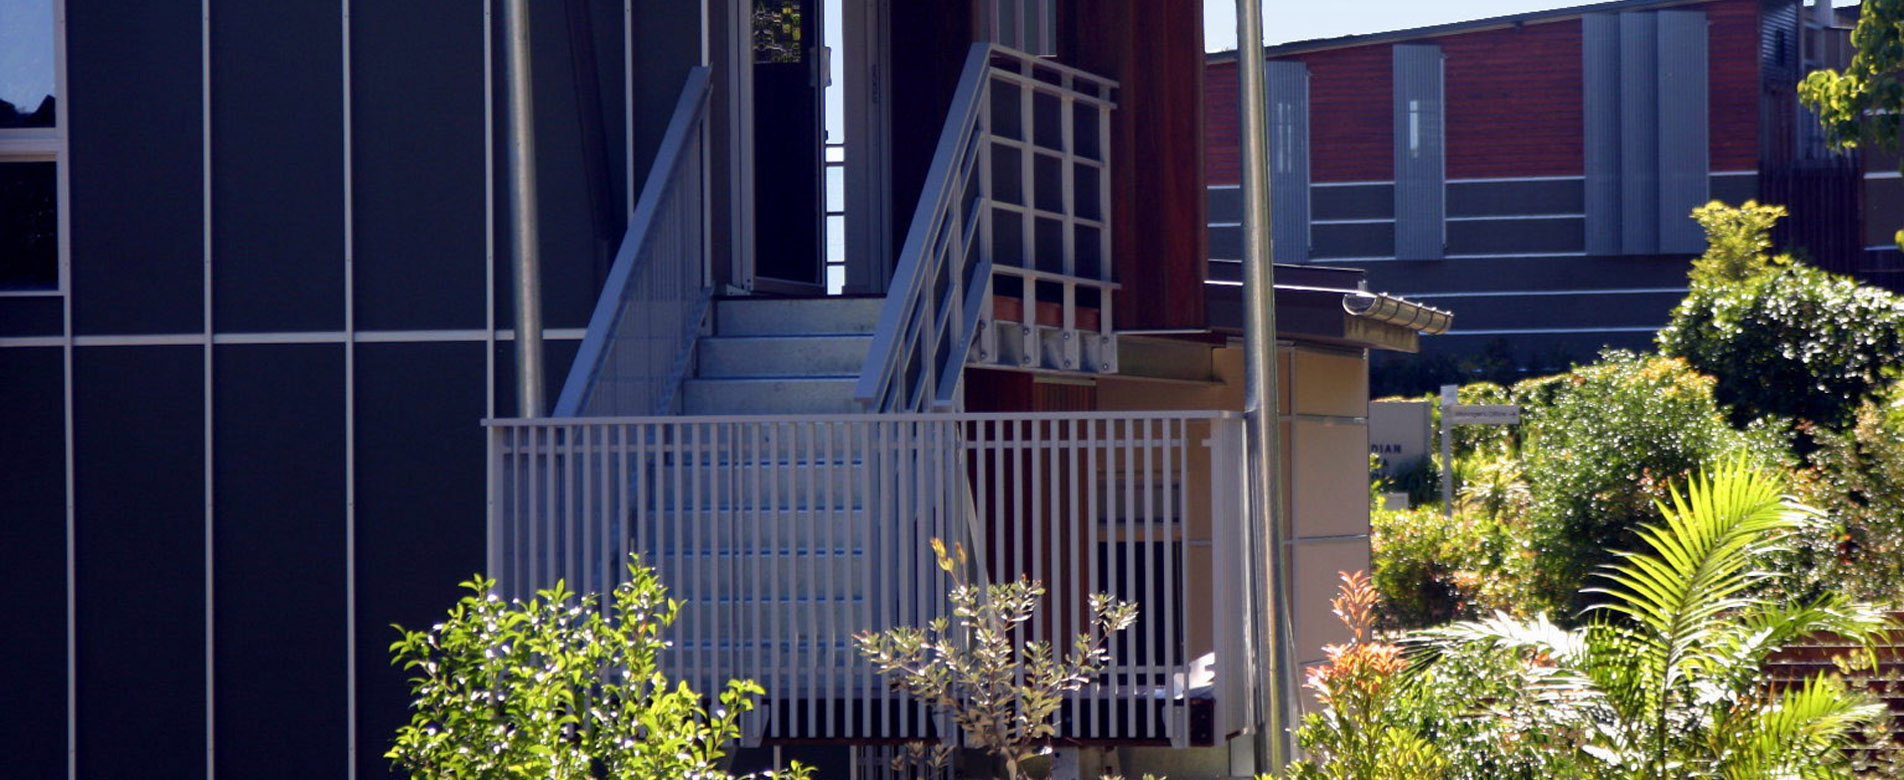 Eastcoast Aluminium design, manufacture and install beautiful balustrade